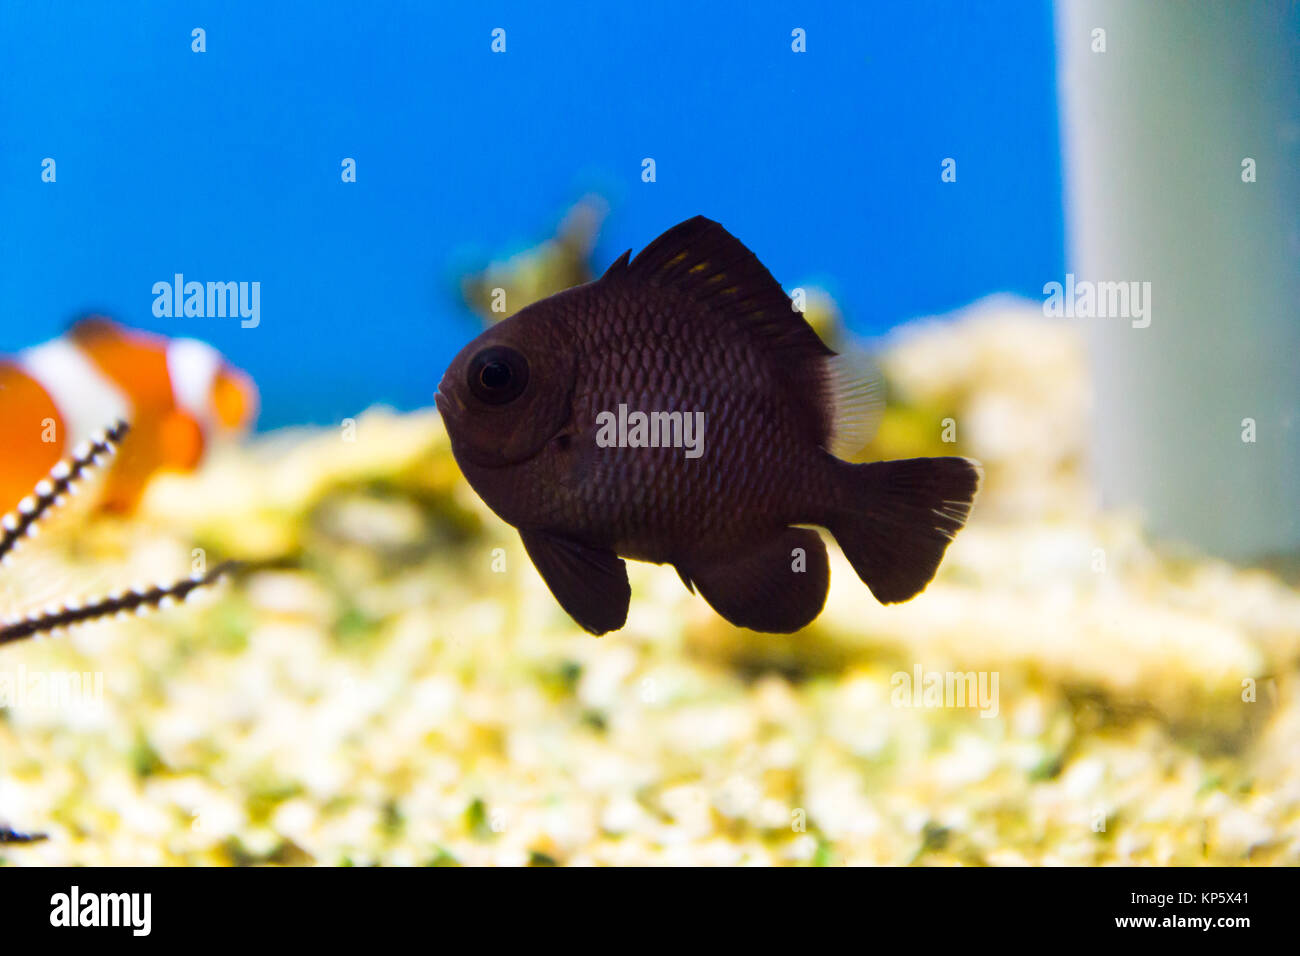 Black aquarium fish dascyllus in salt water Stock Photo